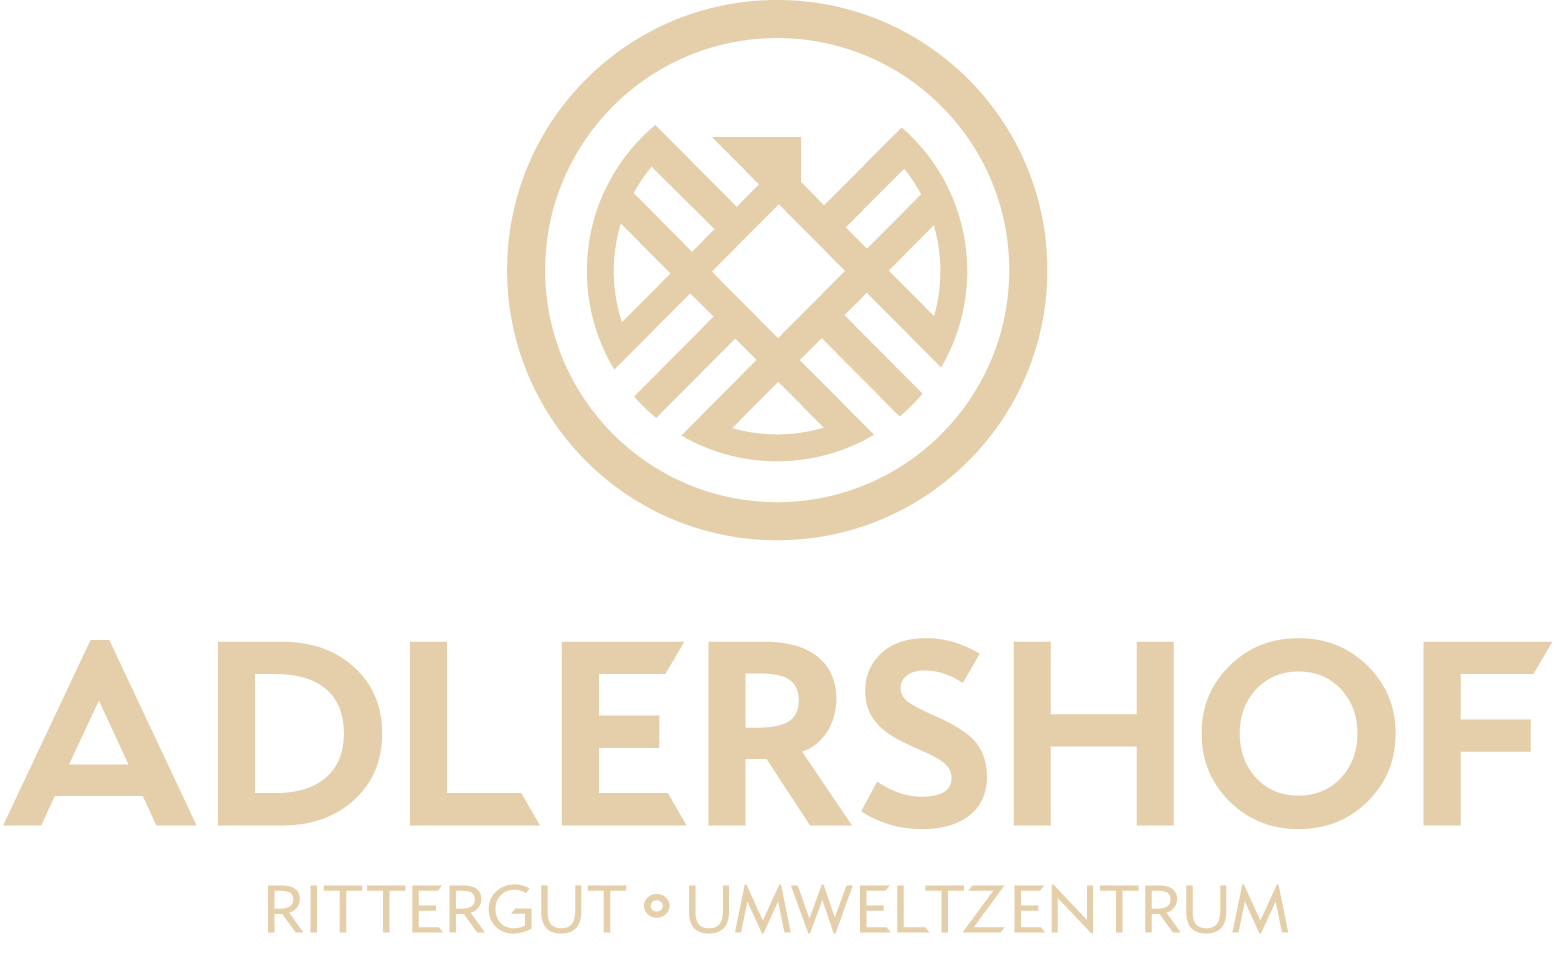 Rittergut Adlershof Umweltzentrum Oberlauterbach Vogtland - Navigation Logo © Jens Reiher